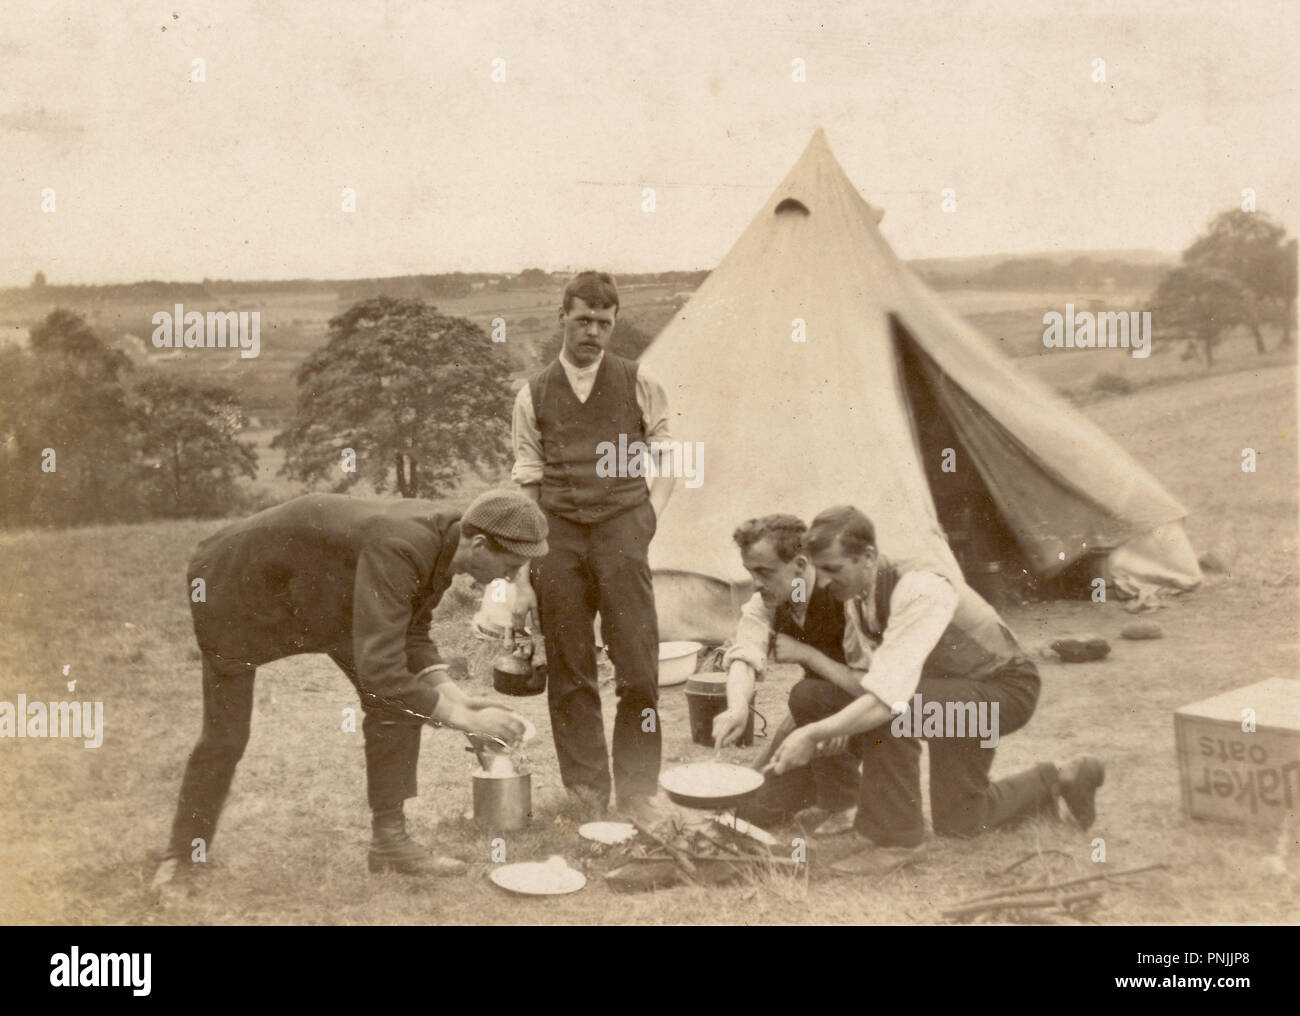 Edwardianische Postkarte von jungen Männern, die auf dem Land campen, Kochen auf offenem Feuer außerhalb Zeltdach, um 1905, Großbritannien Stockfoto